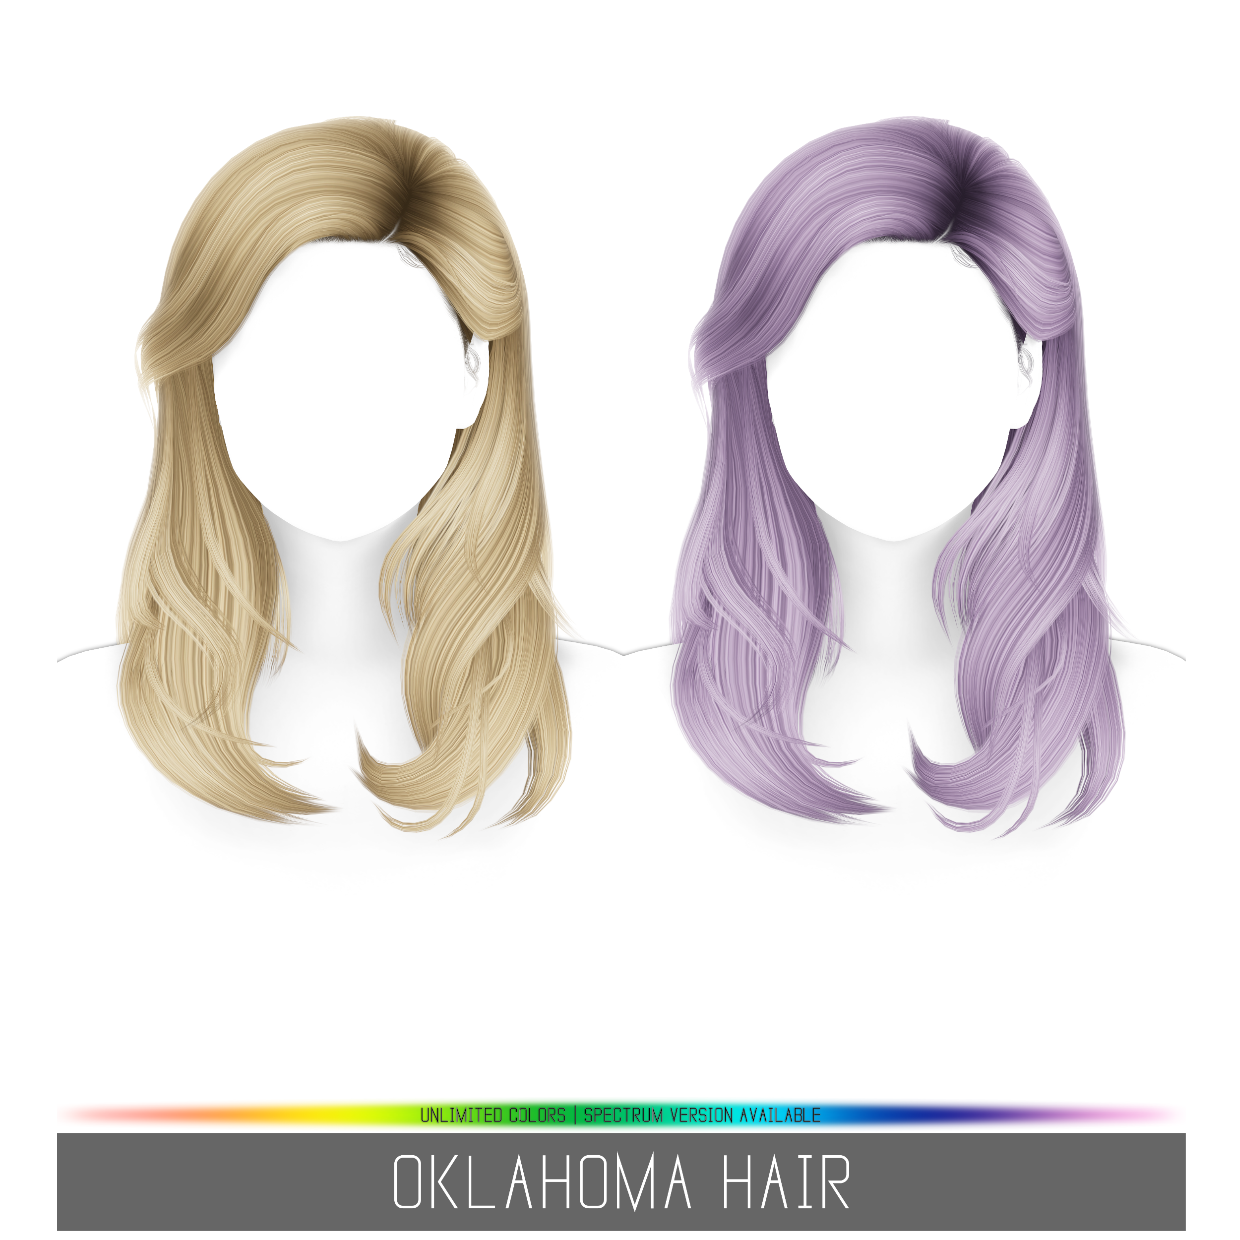 Simpliciaty's Oklahoma Hair - The Sims 4 Create a Sim - CurseForge